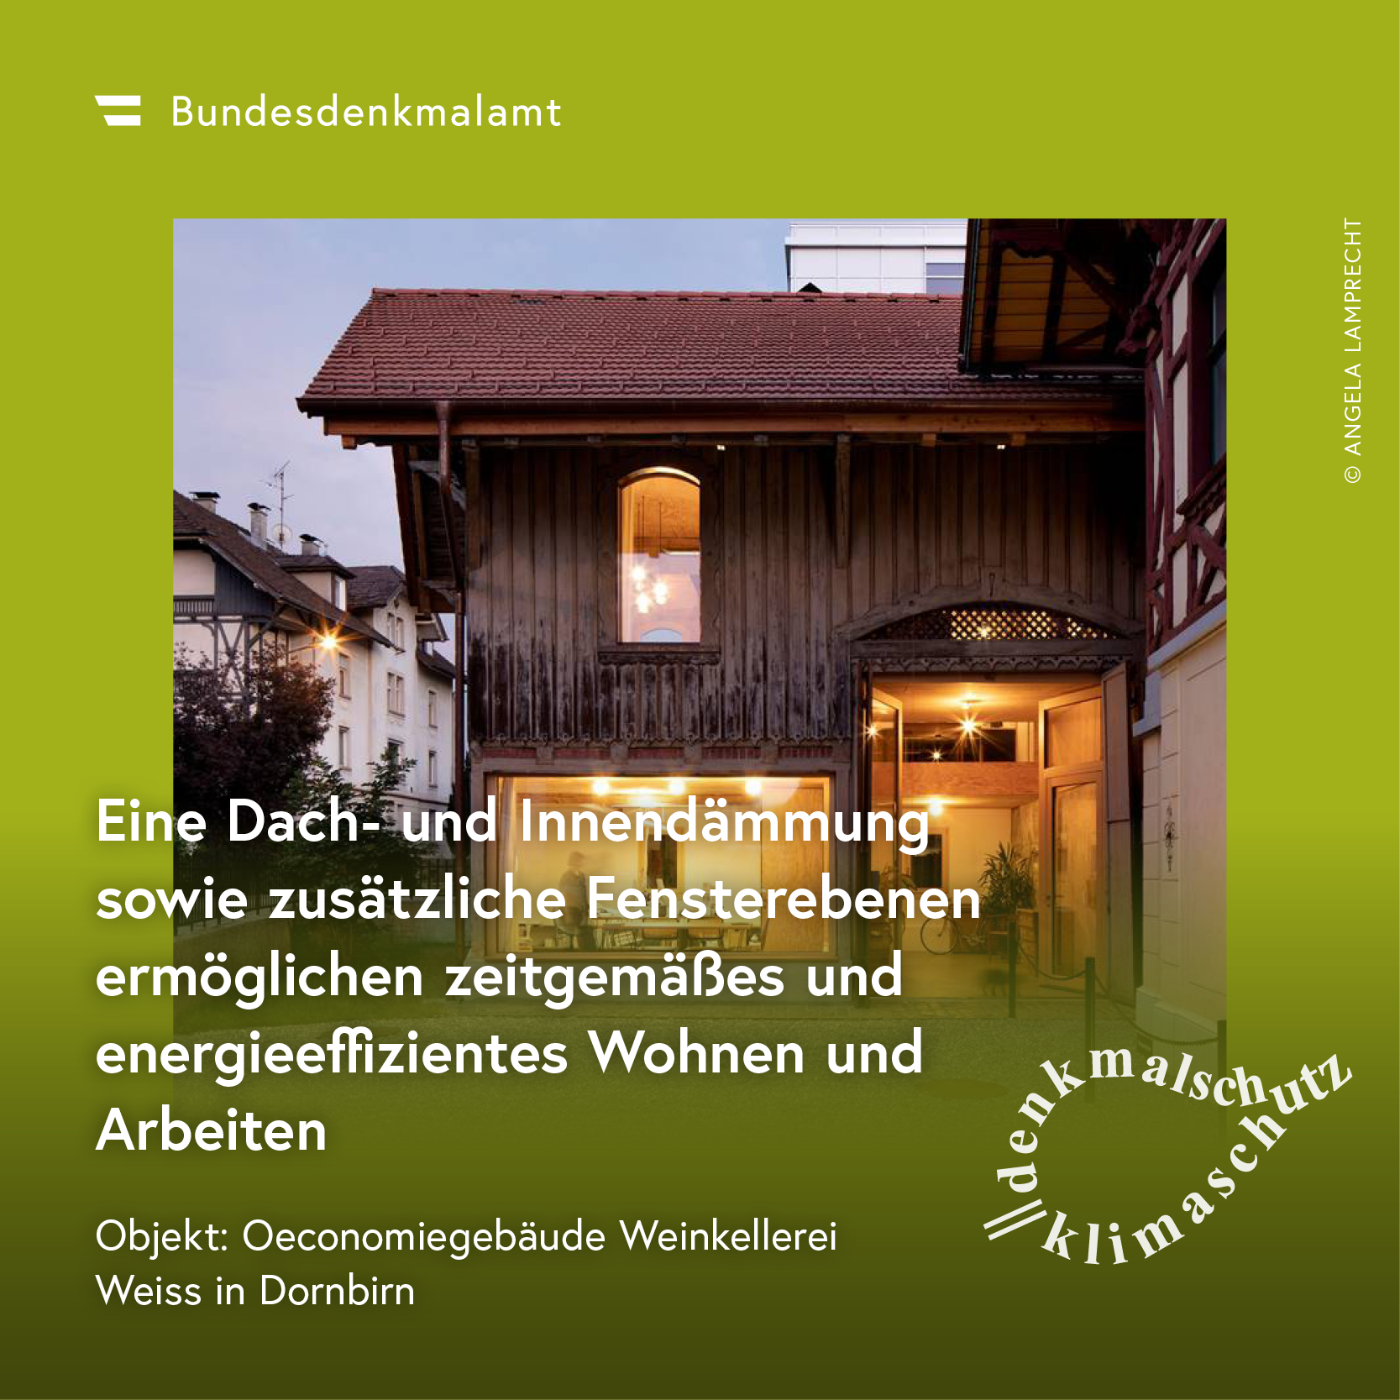 Sujet der Kampagne "Denkmalschutz ist Klimaschutz" - Oeconomiegebäude in Dornbirn (Vorarlberg)